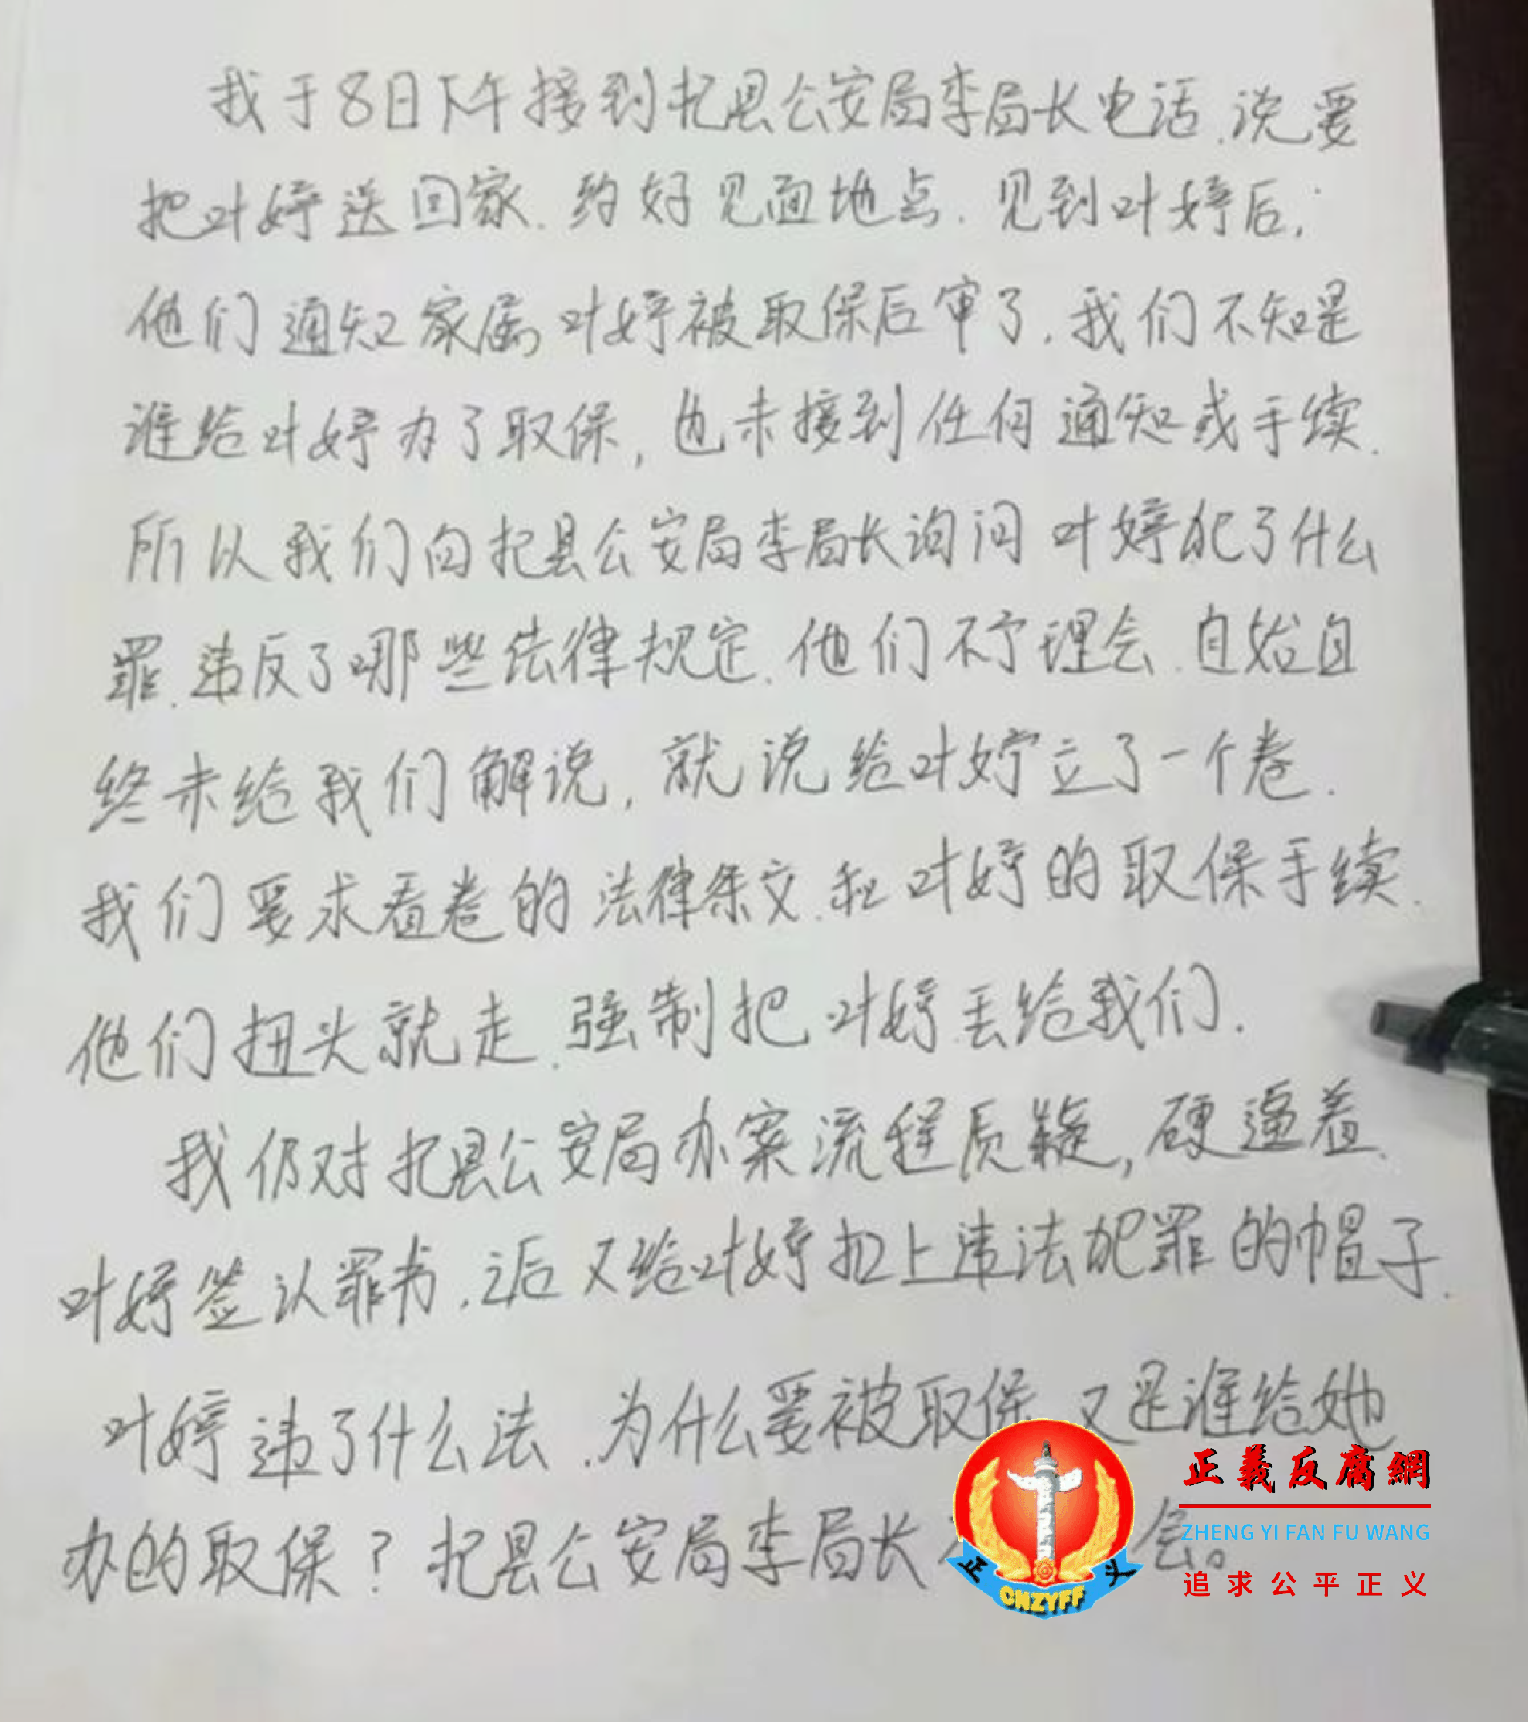 叶婷姐姐叶双玲在抖音上发布了一张手写的声明.png